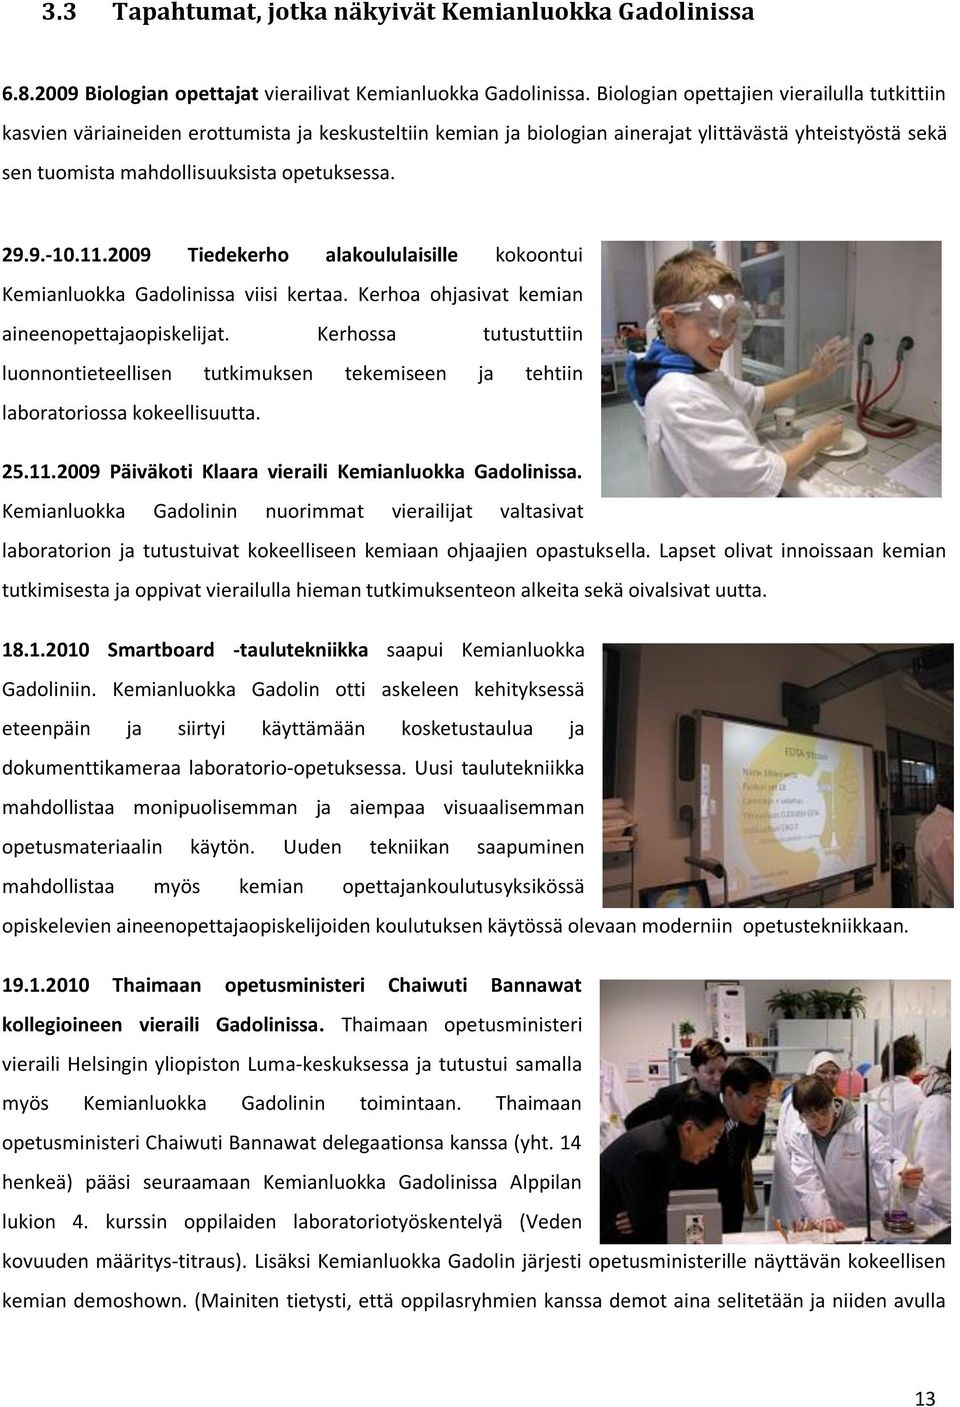 29.9.-10.11.2009 Tiedekerho alakoululaisille kokoontui Kemianluokka Gadolinissa viisi kertaa. Kerhoa ohjasivat kemian aineenopettajaopiskelijat.